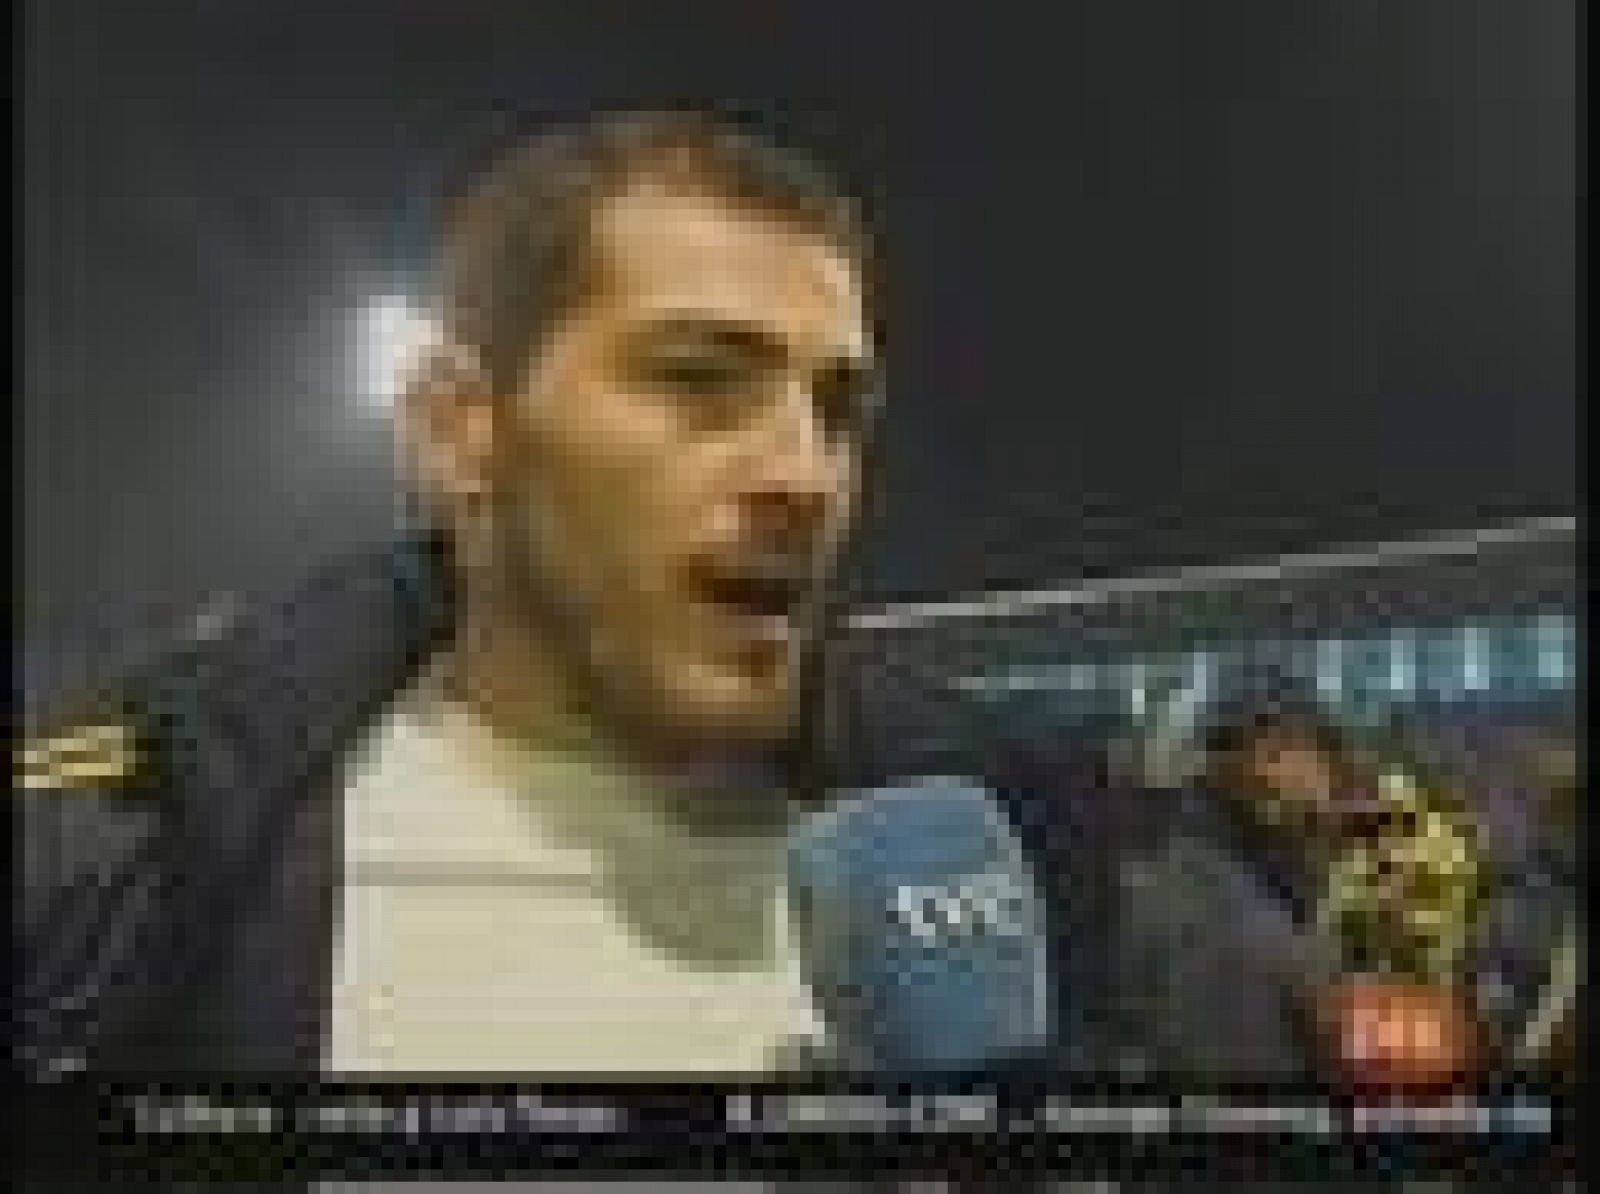 Casillas h adeclarado a la selección como una seria candidata al Mundial de 2010. Por su parte, Negredo ha tenido la mejor titularidad posible con dos goles.